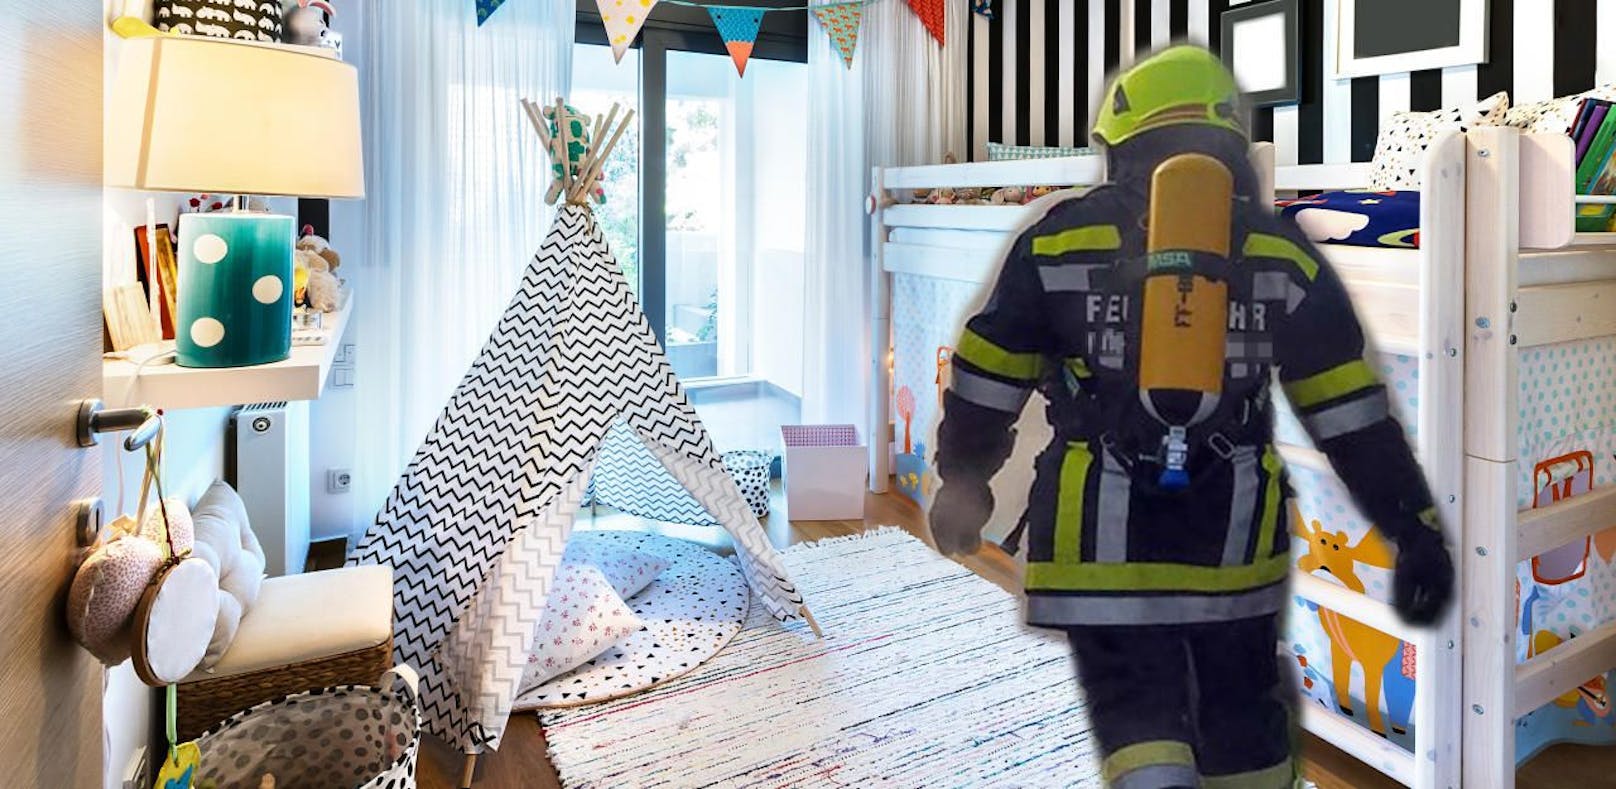 Die Feuerwehr musste den Brand im Kinderzimmer des Dreijährigen löschen.